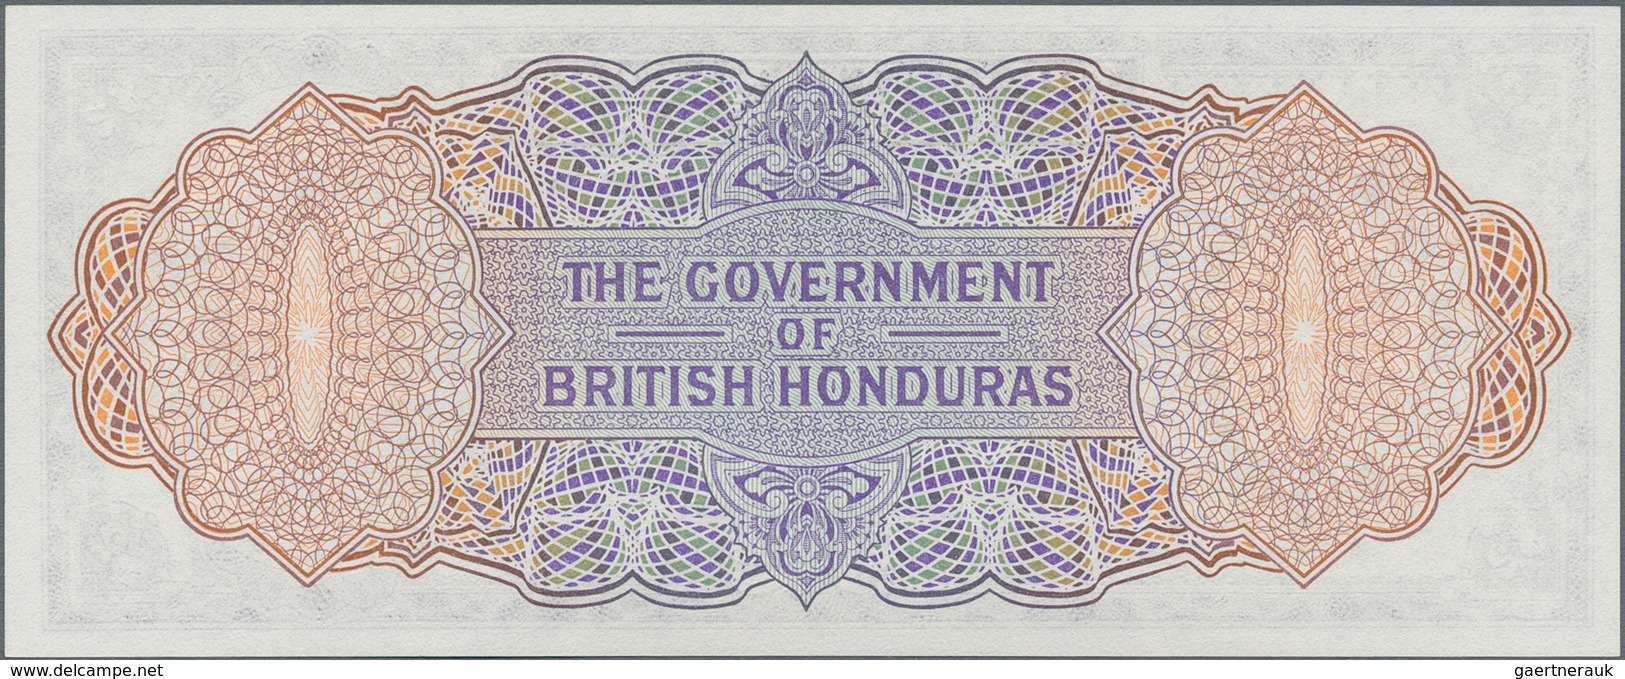 British Honduras: The Government Of British Honduras 2 Dollars January 1st 1973, P.29c, Great Note I - Honduras